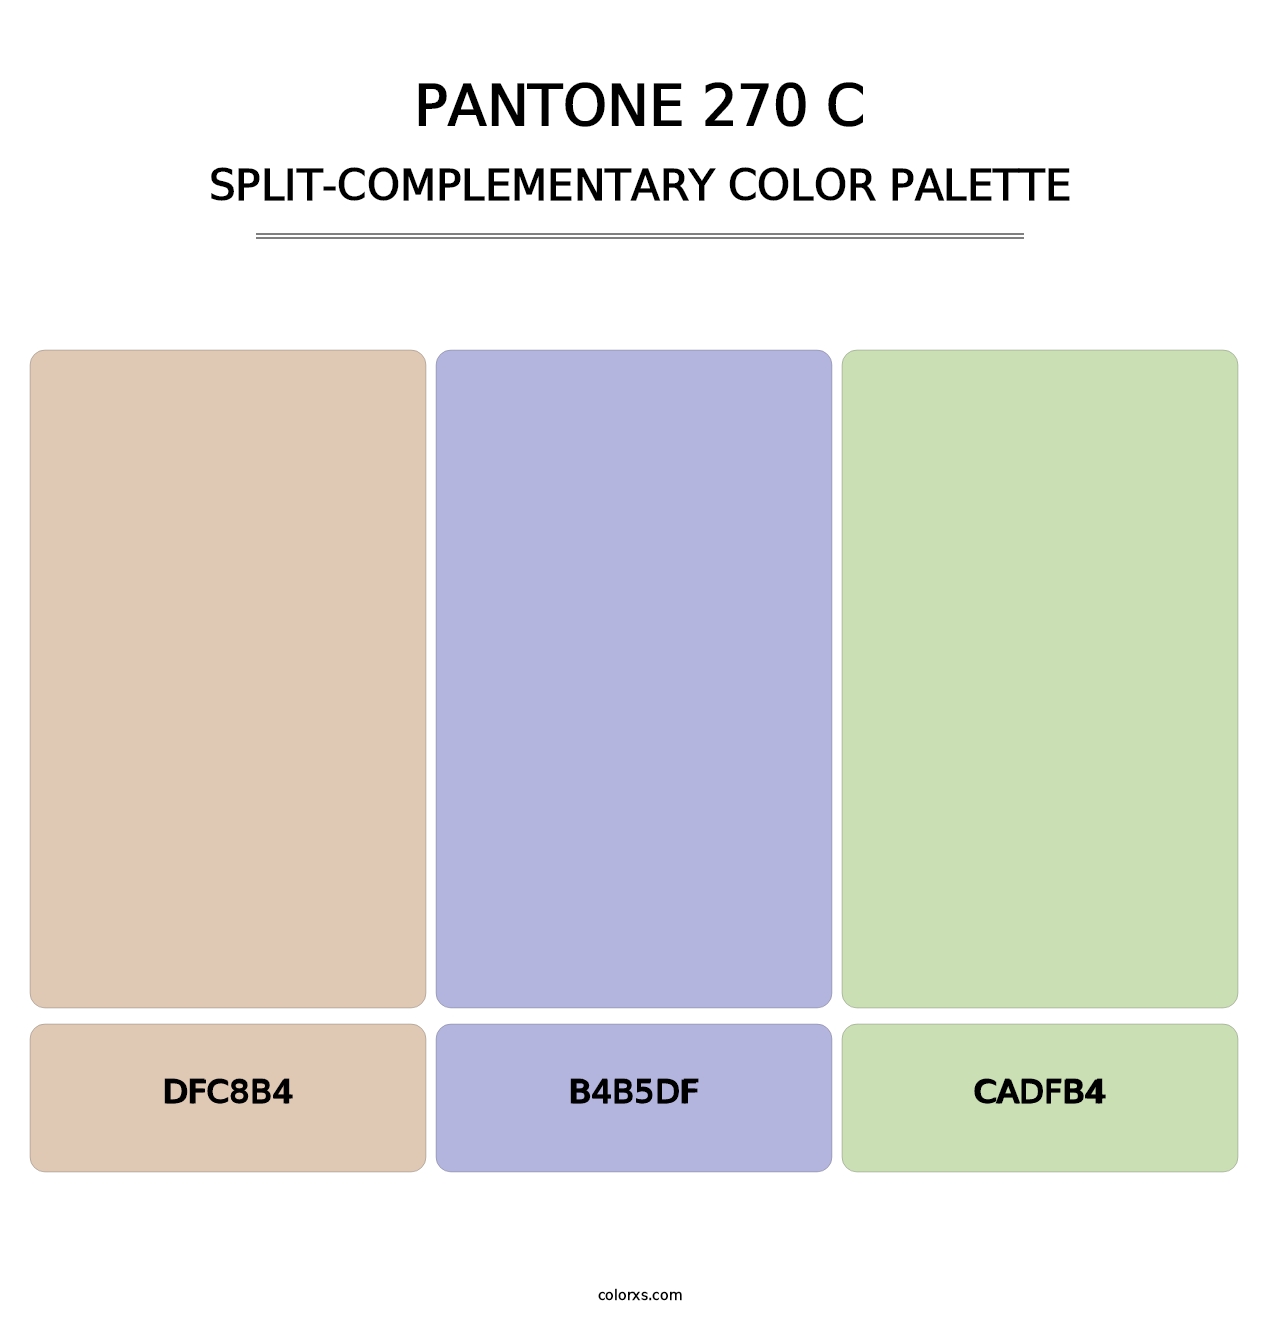 PANTONE 270 C - Split-Complementary Color Palette